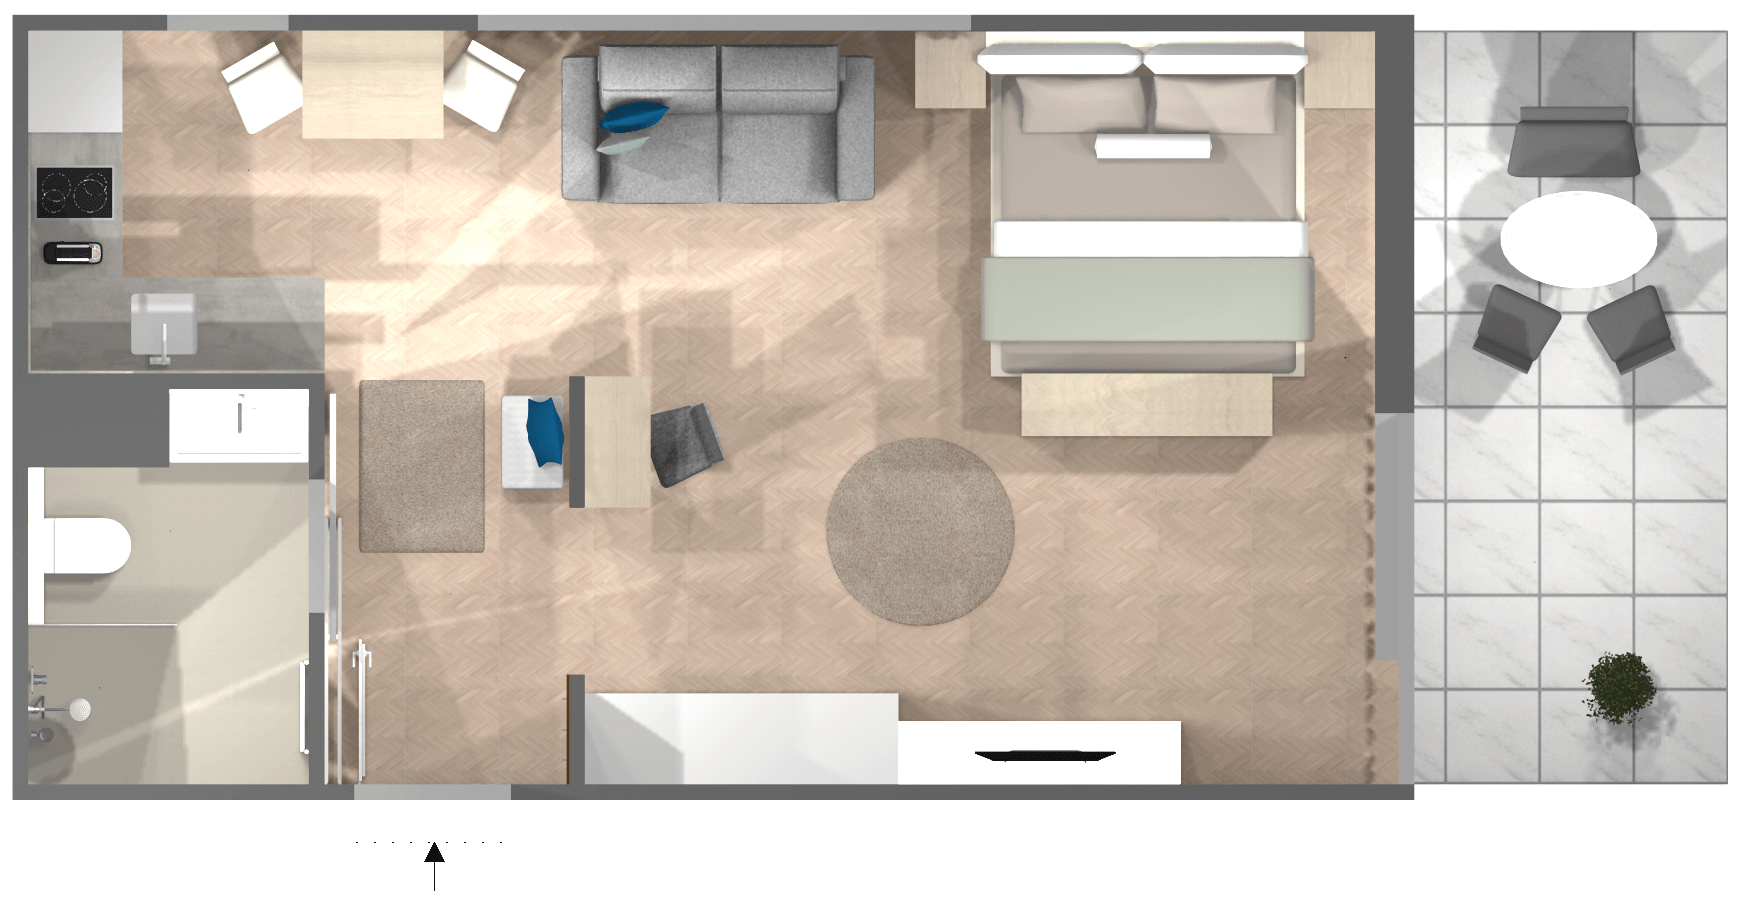 20 Qm Wohnzimmer Kleines Wohnzimmer Mit Essbereich Einrichten Ikea Caseconrad Com